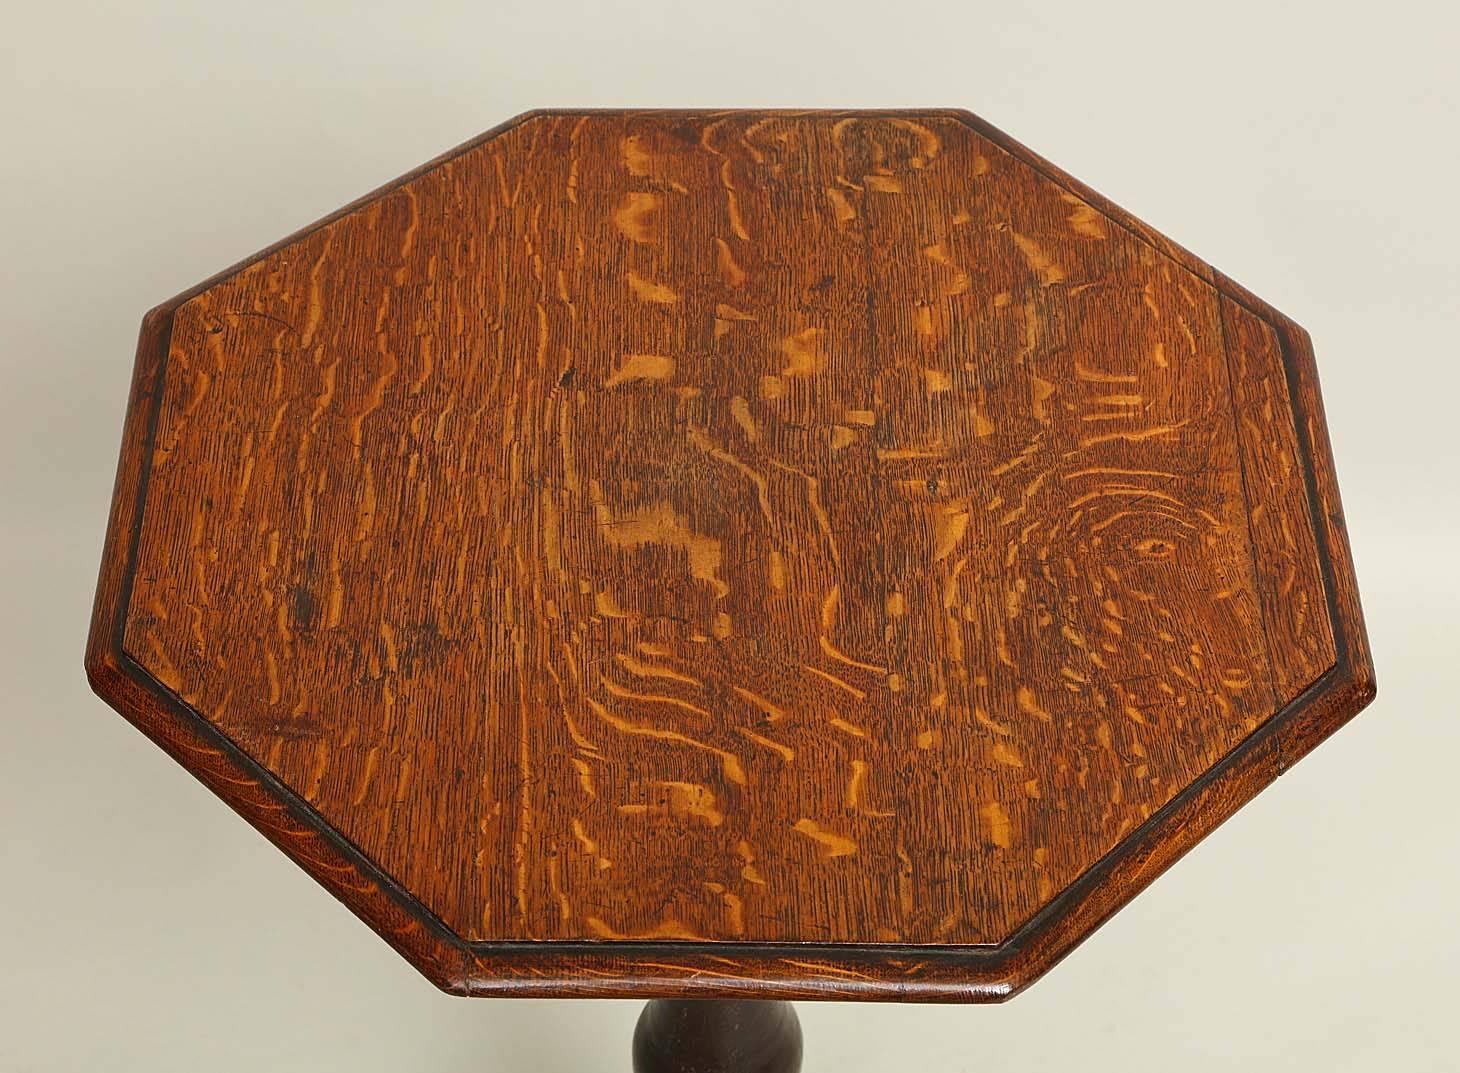 Achteckiger Tisch aus englischer Eiche, 19. Jahrhundert, mit geformter Platte über einem kühn gedrechselten Schaft, auf geformten Füßen stehend, mit ungewöhnlich abgerundeten Lappen an der Unterseite. Das Ganze mit angenehmer, weicher Farbe.



 